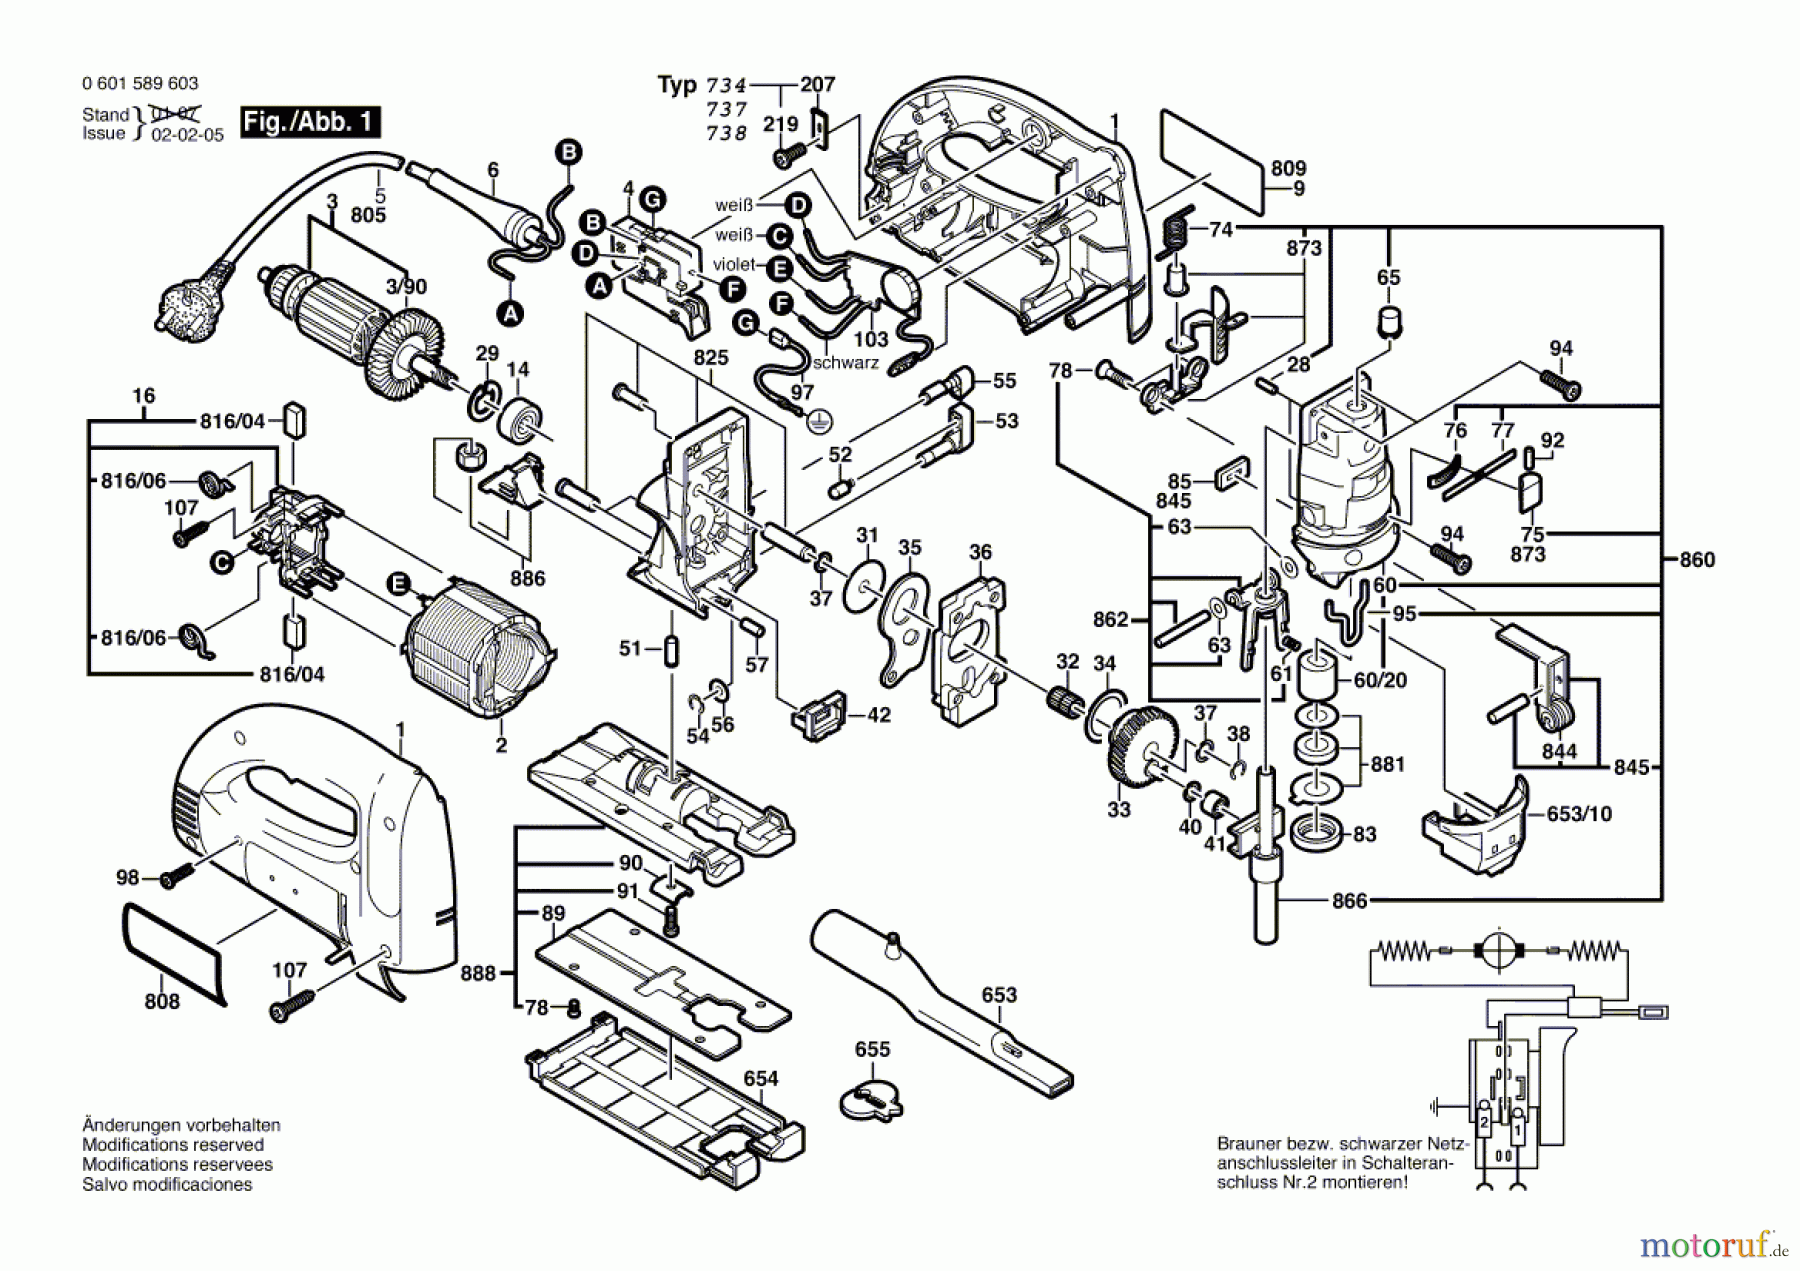  Bosch Werkzeug Stichsäge BJS-TH Seite 1